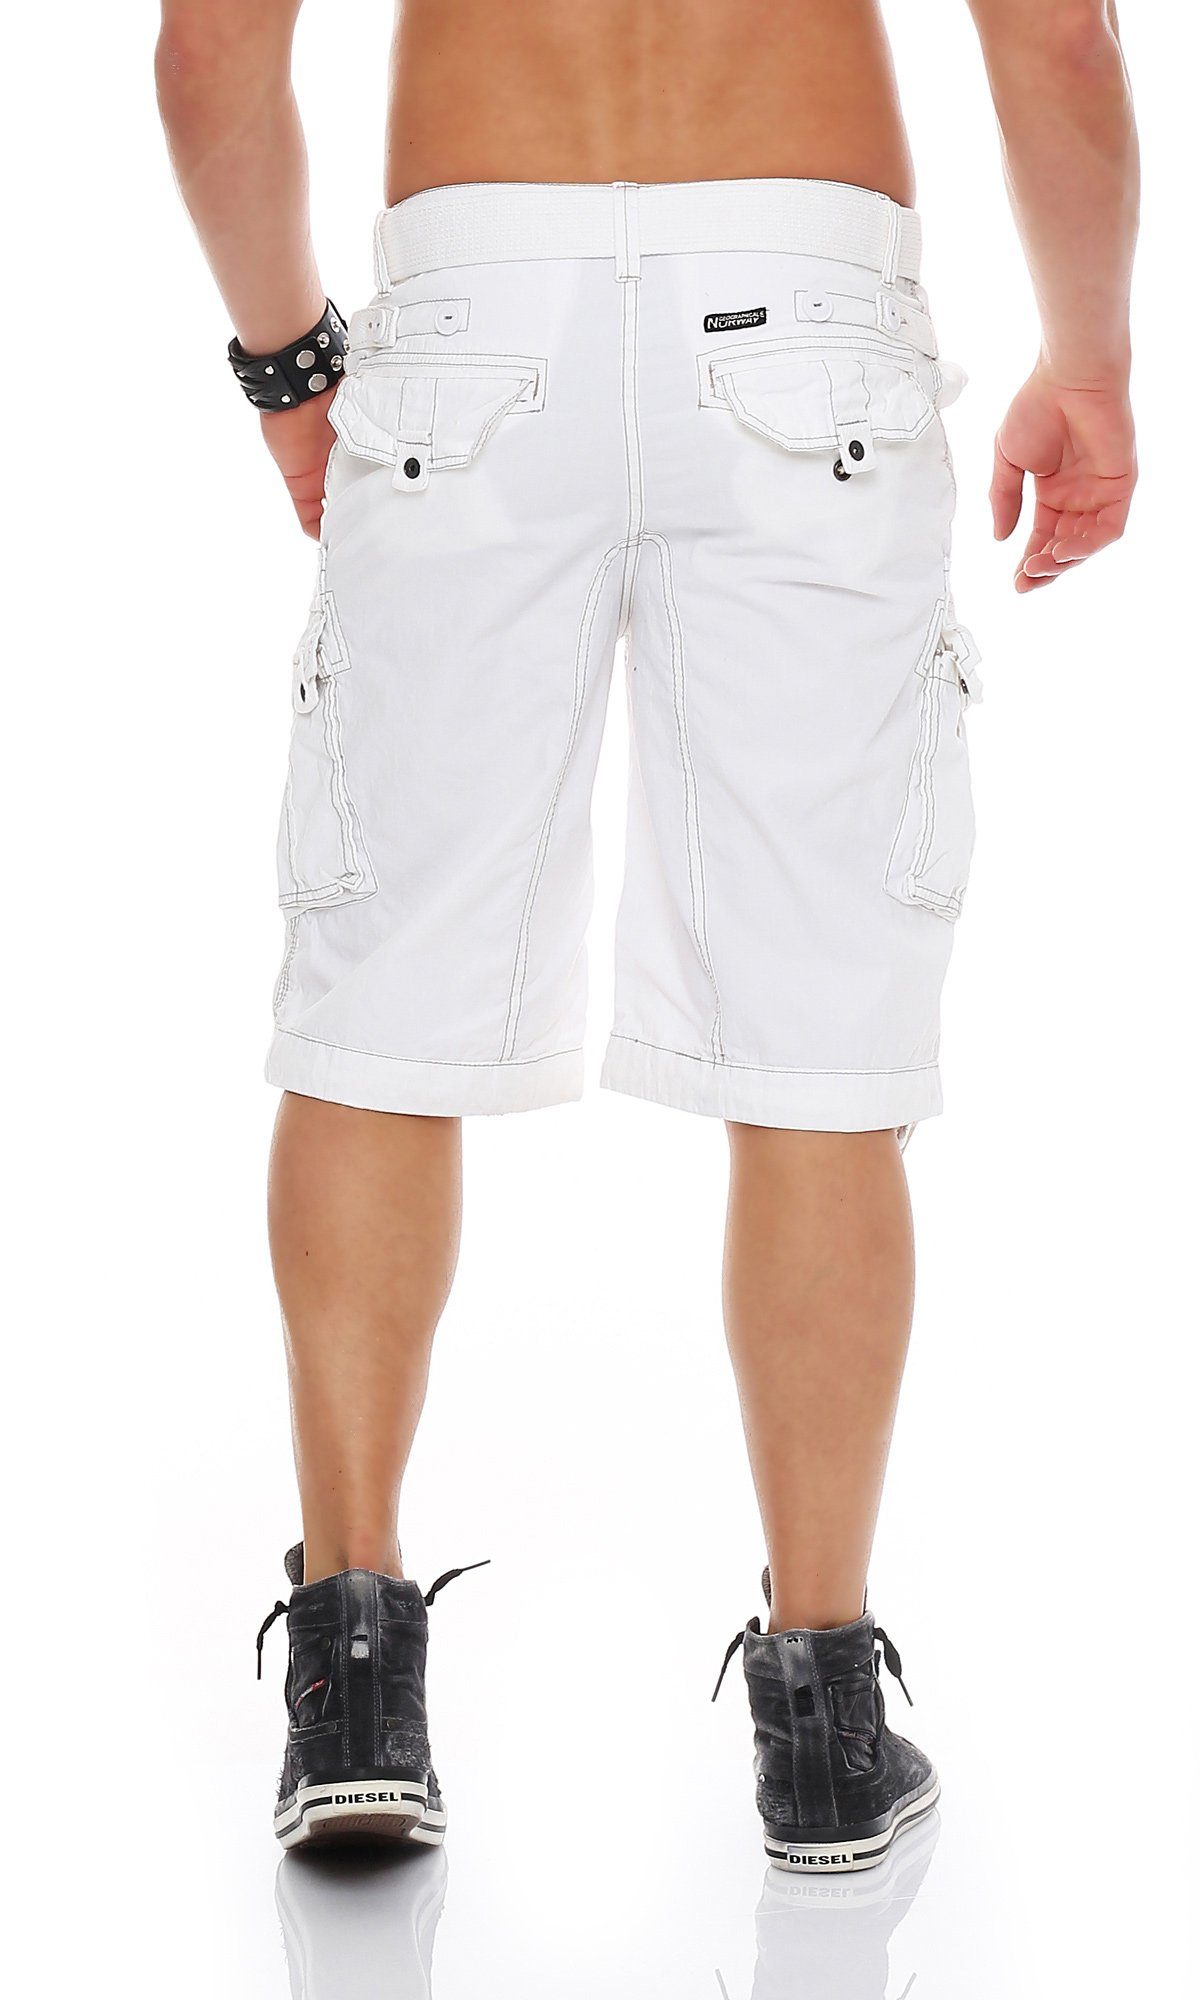 / Gürtel) Norway Geographical Cargoshorts abnehmbarem kurze white Herren Shorts, unifarben (mit camouflage PANORAMIQUE Hose, Shorts